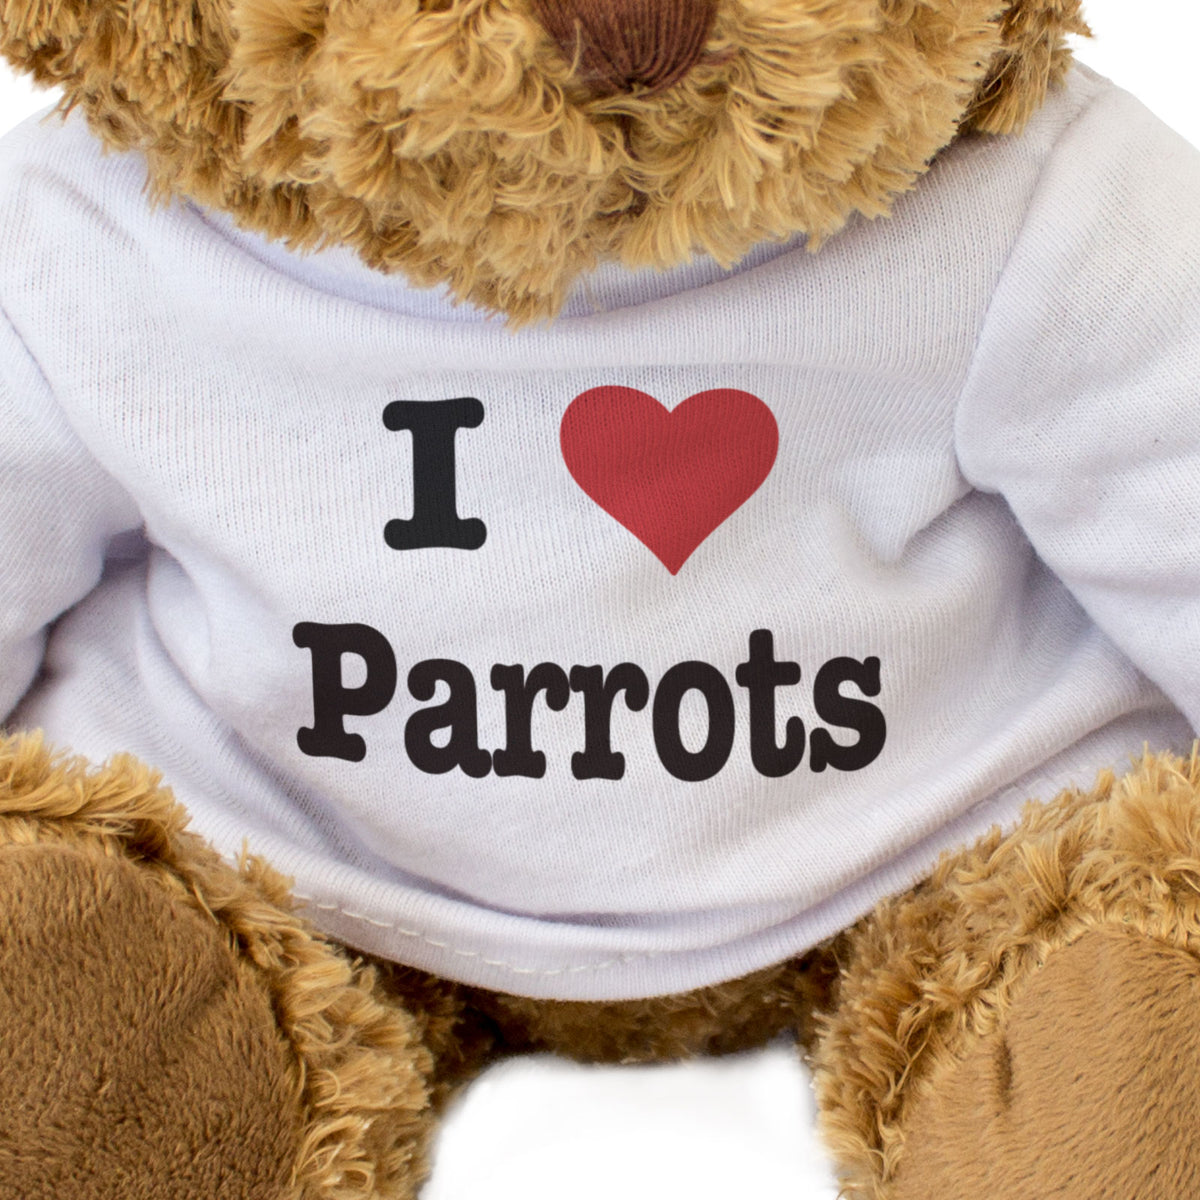 I Love Parrots - Teddy Bear